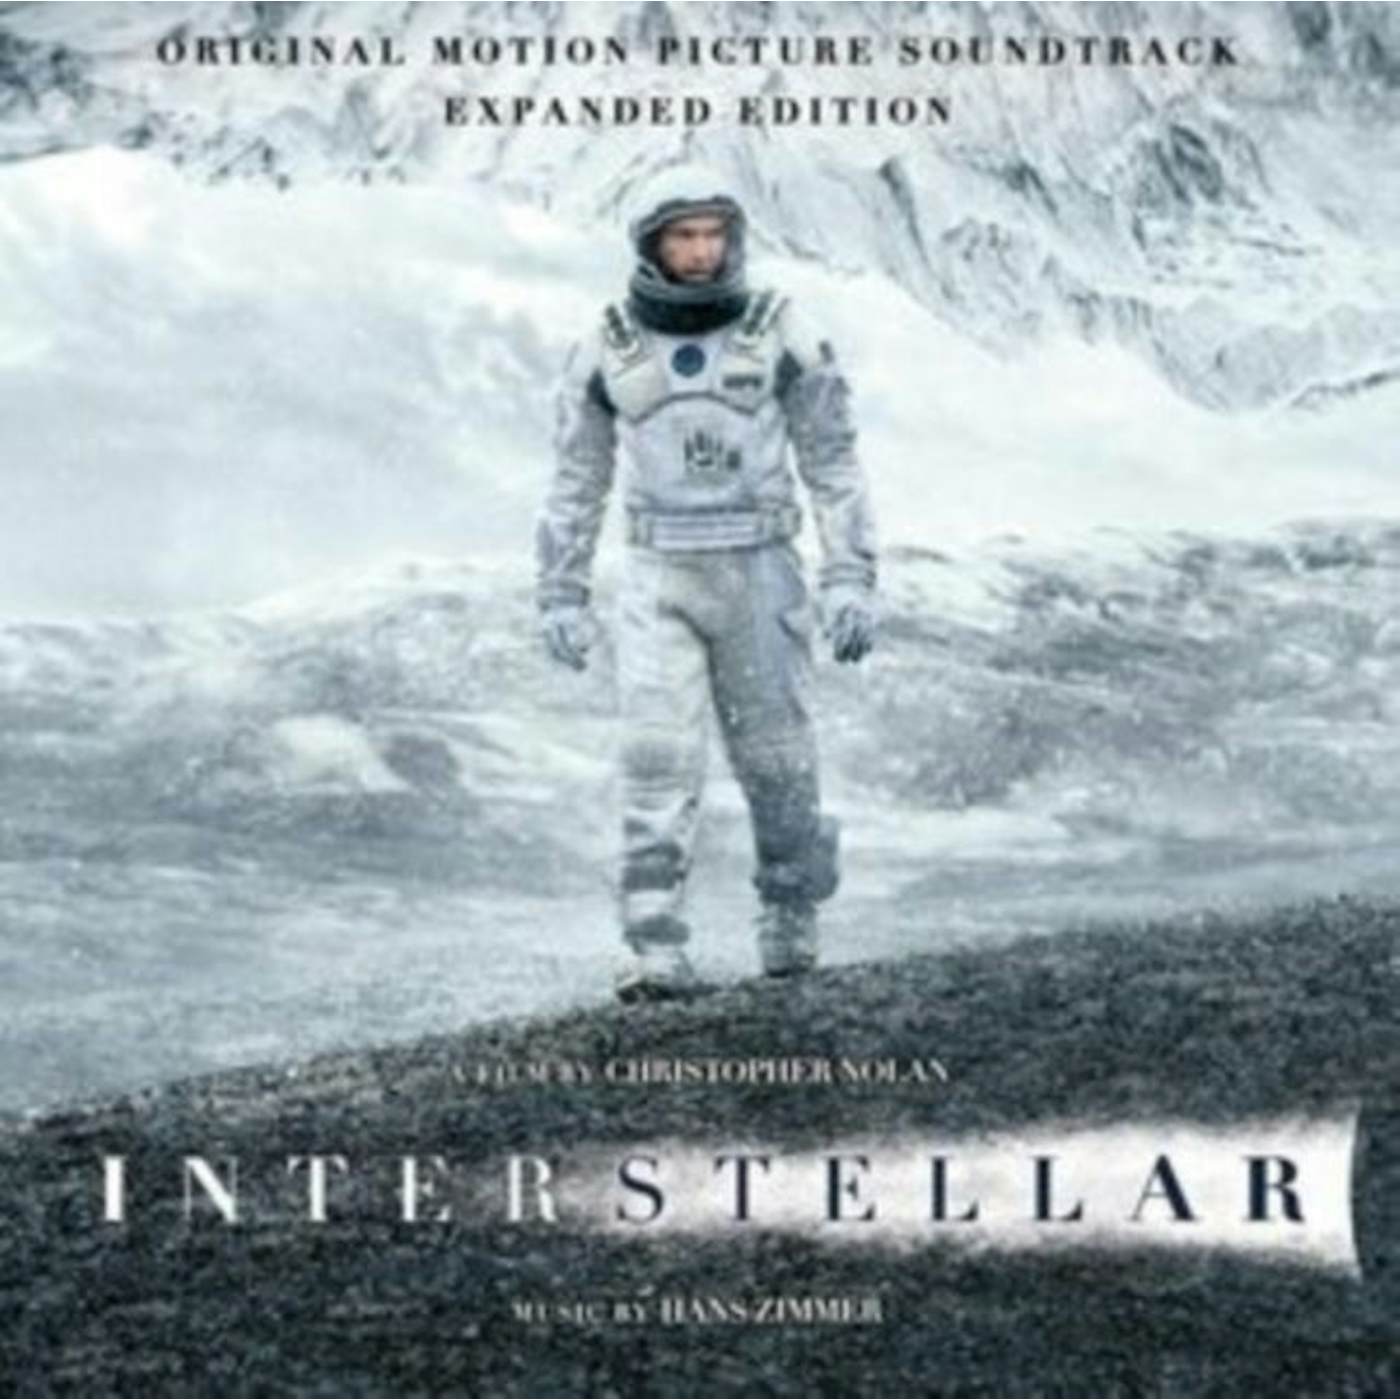 Hans Zimmer LP Vinyl Record - Interstellar - Original Soundtrack